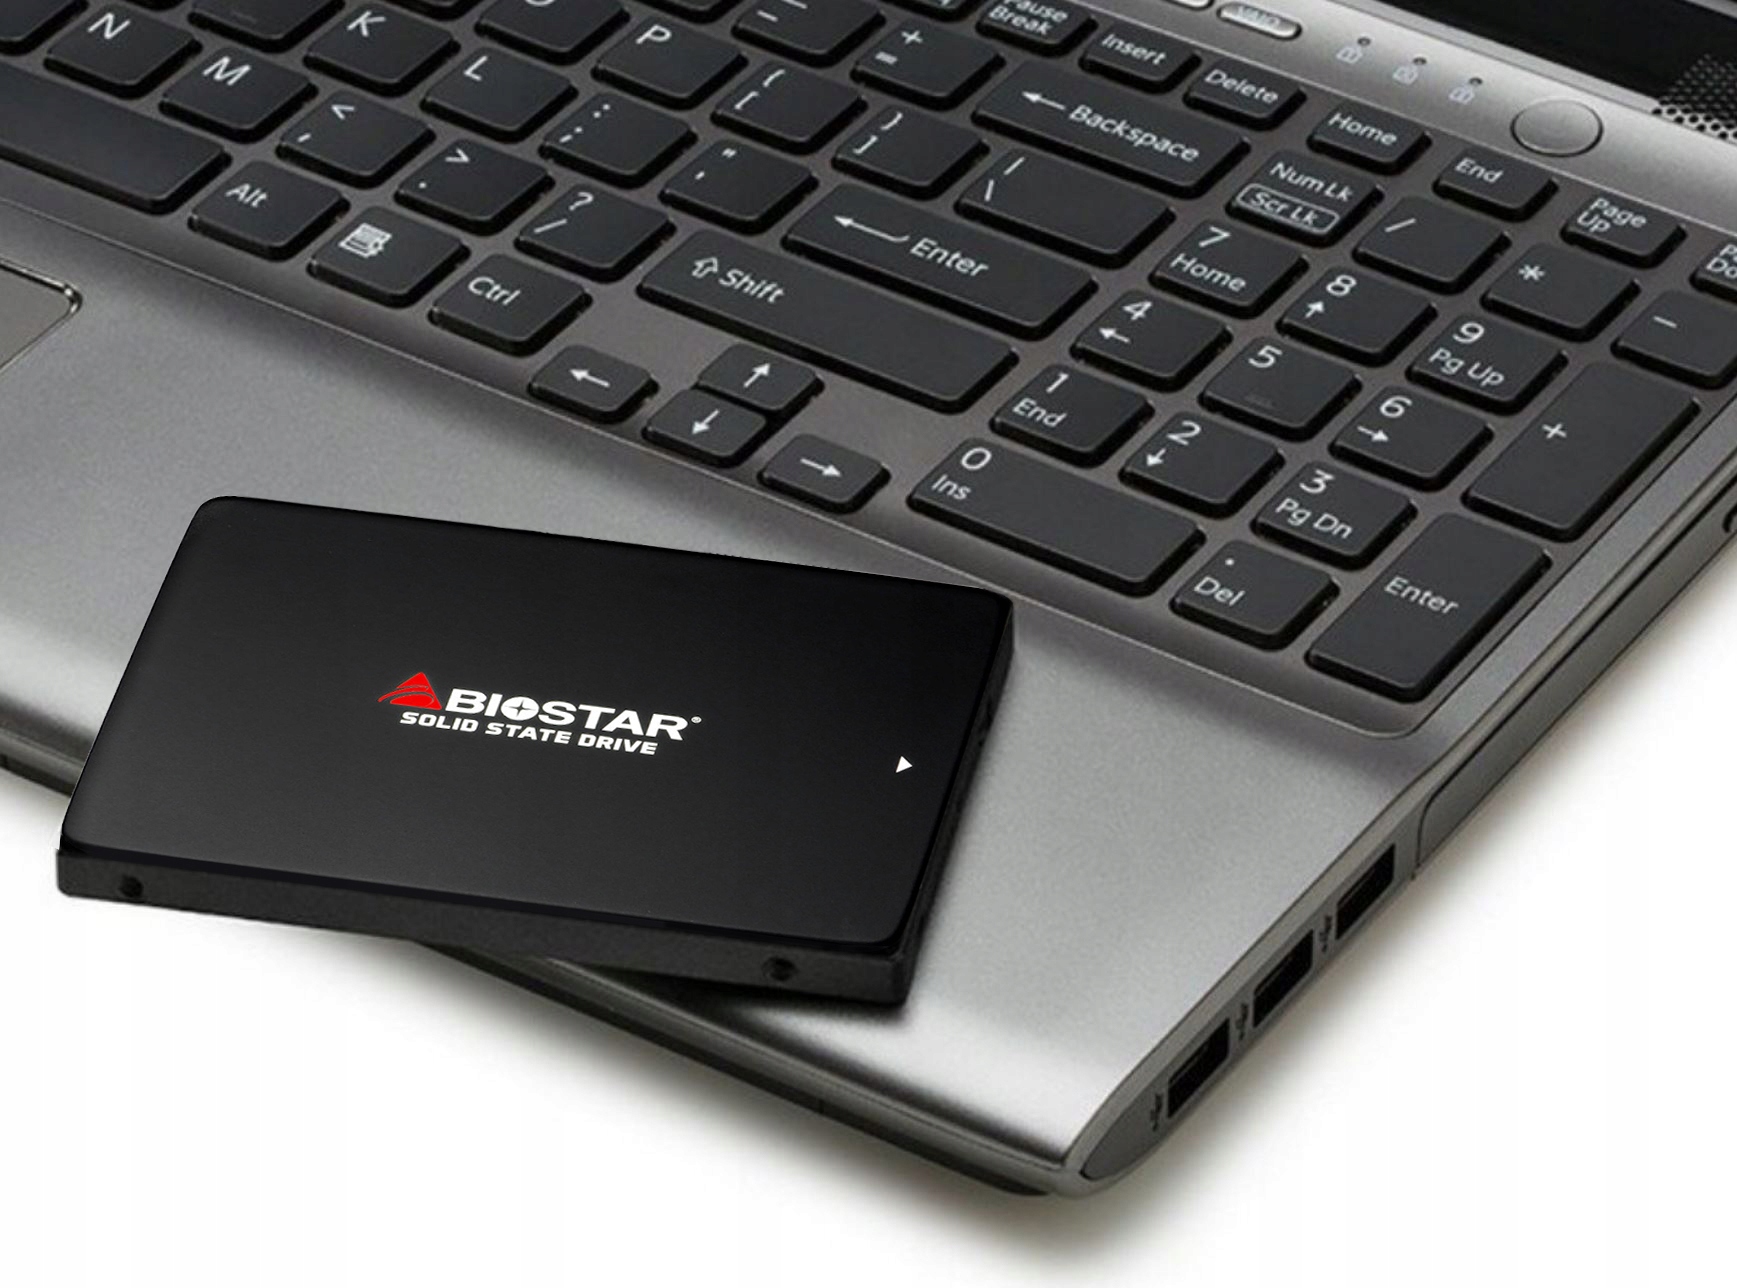 SSD BIOSTAR 120GB S100 SATA3 2.5 530Mbps Modelis Biostar SSD S100 Series 120GB SATA3